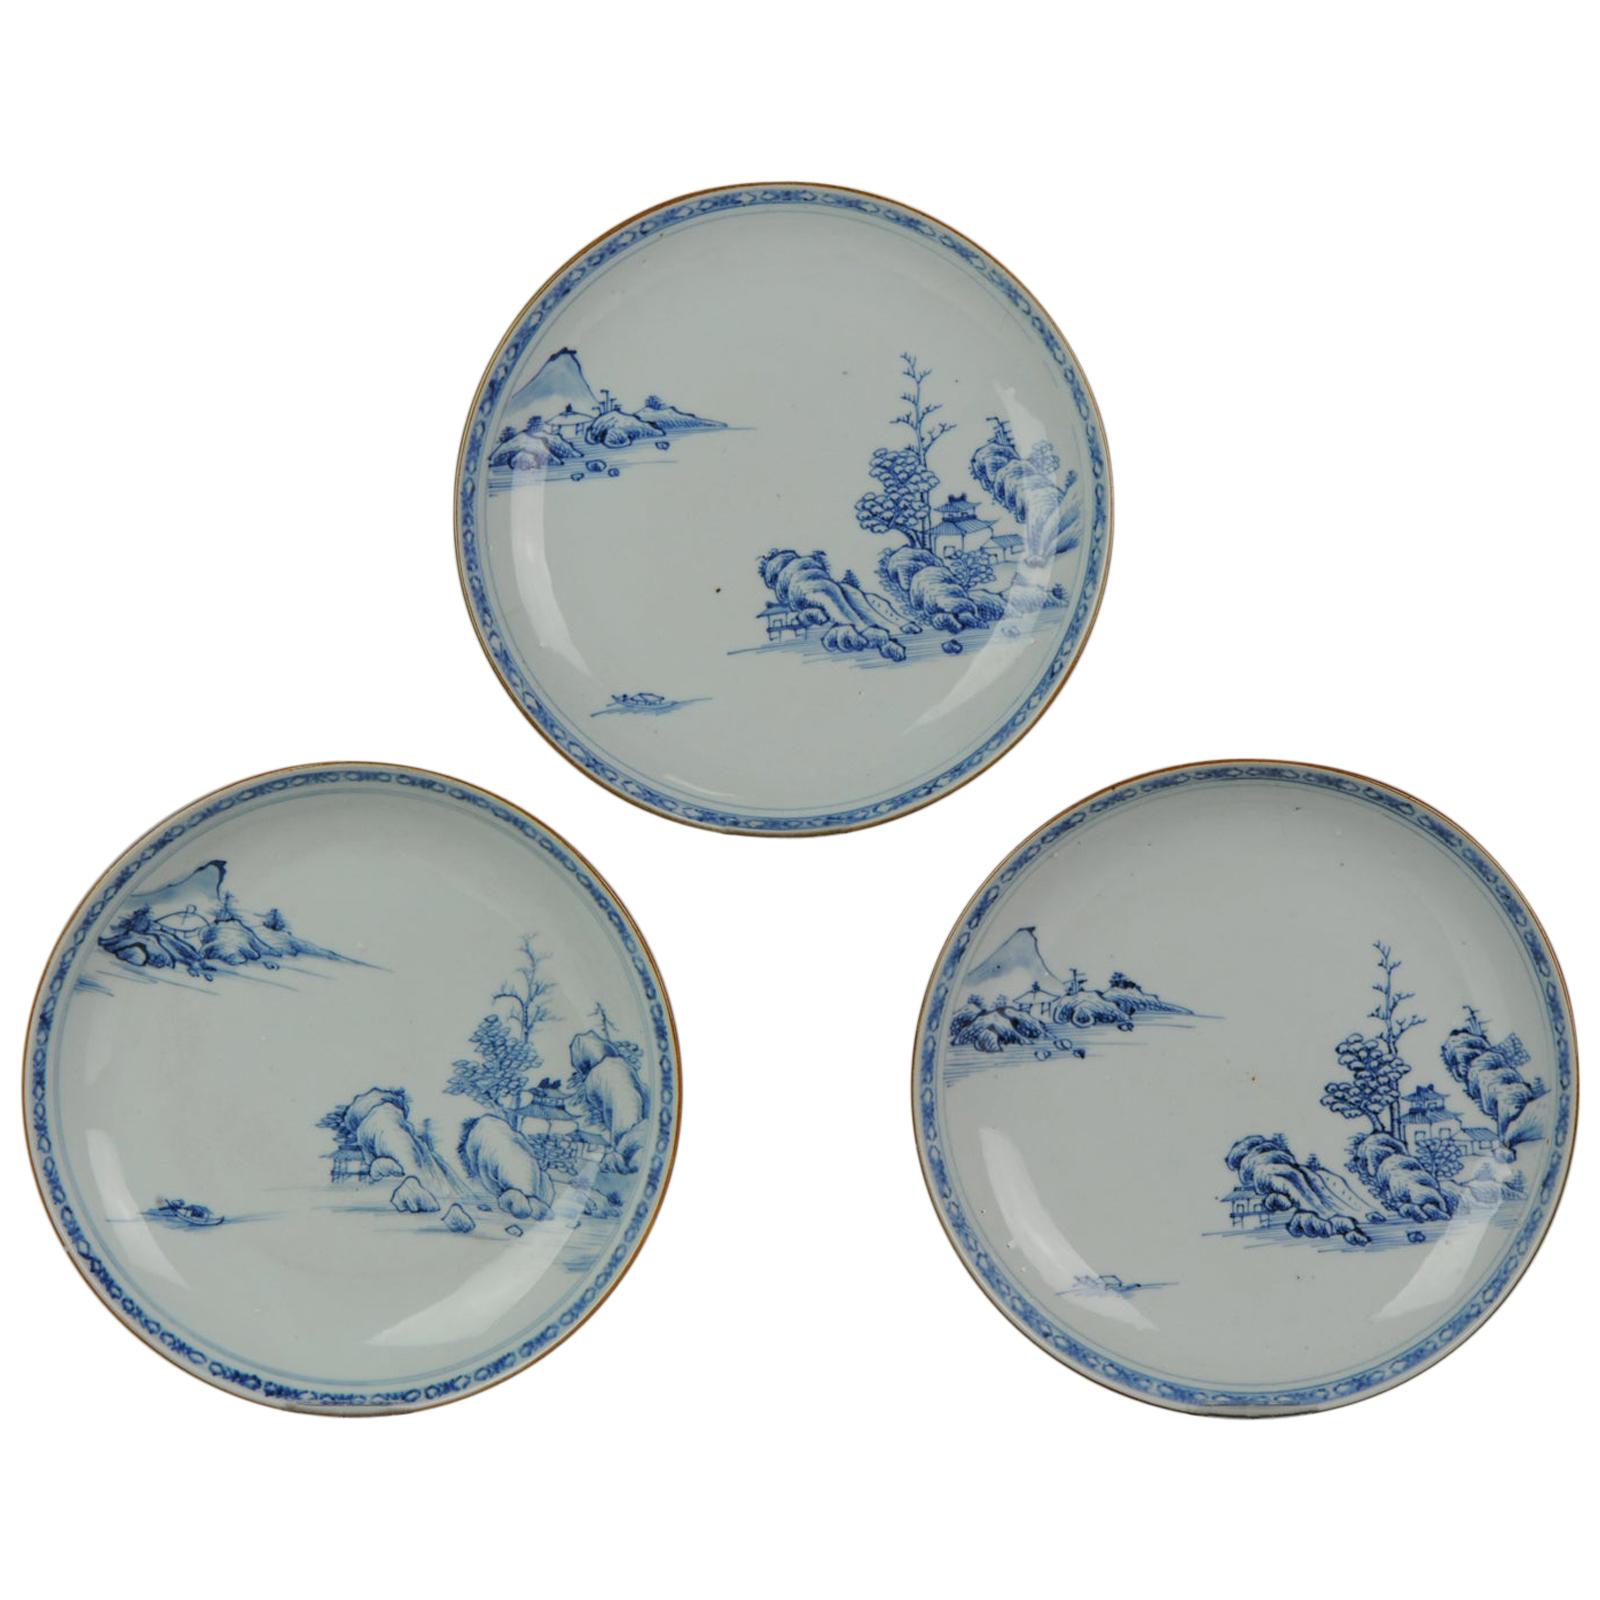 #3 Antike chinesische Qianlong-Teller aus Porzellan aus dem 18. Jahrhundert, Landschaft in Blau und Weiß